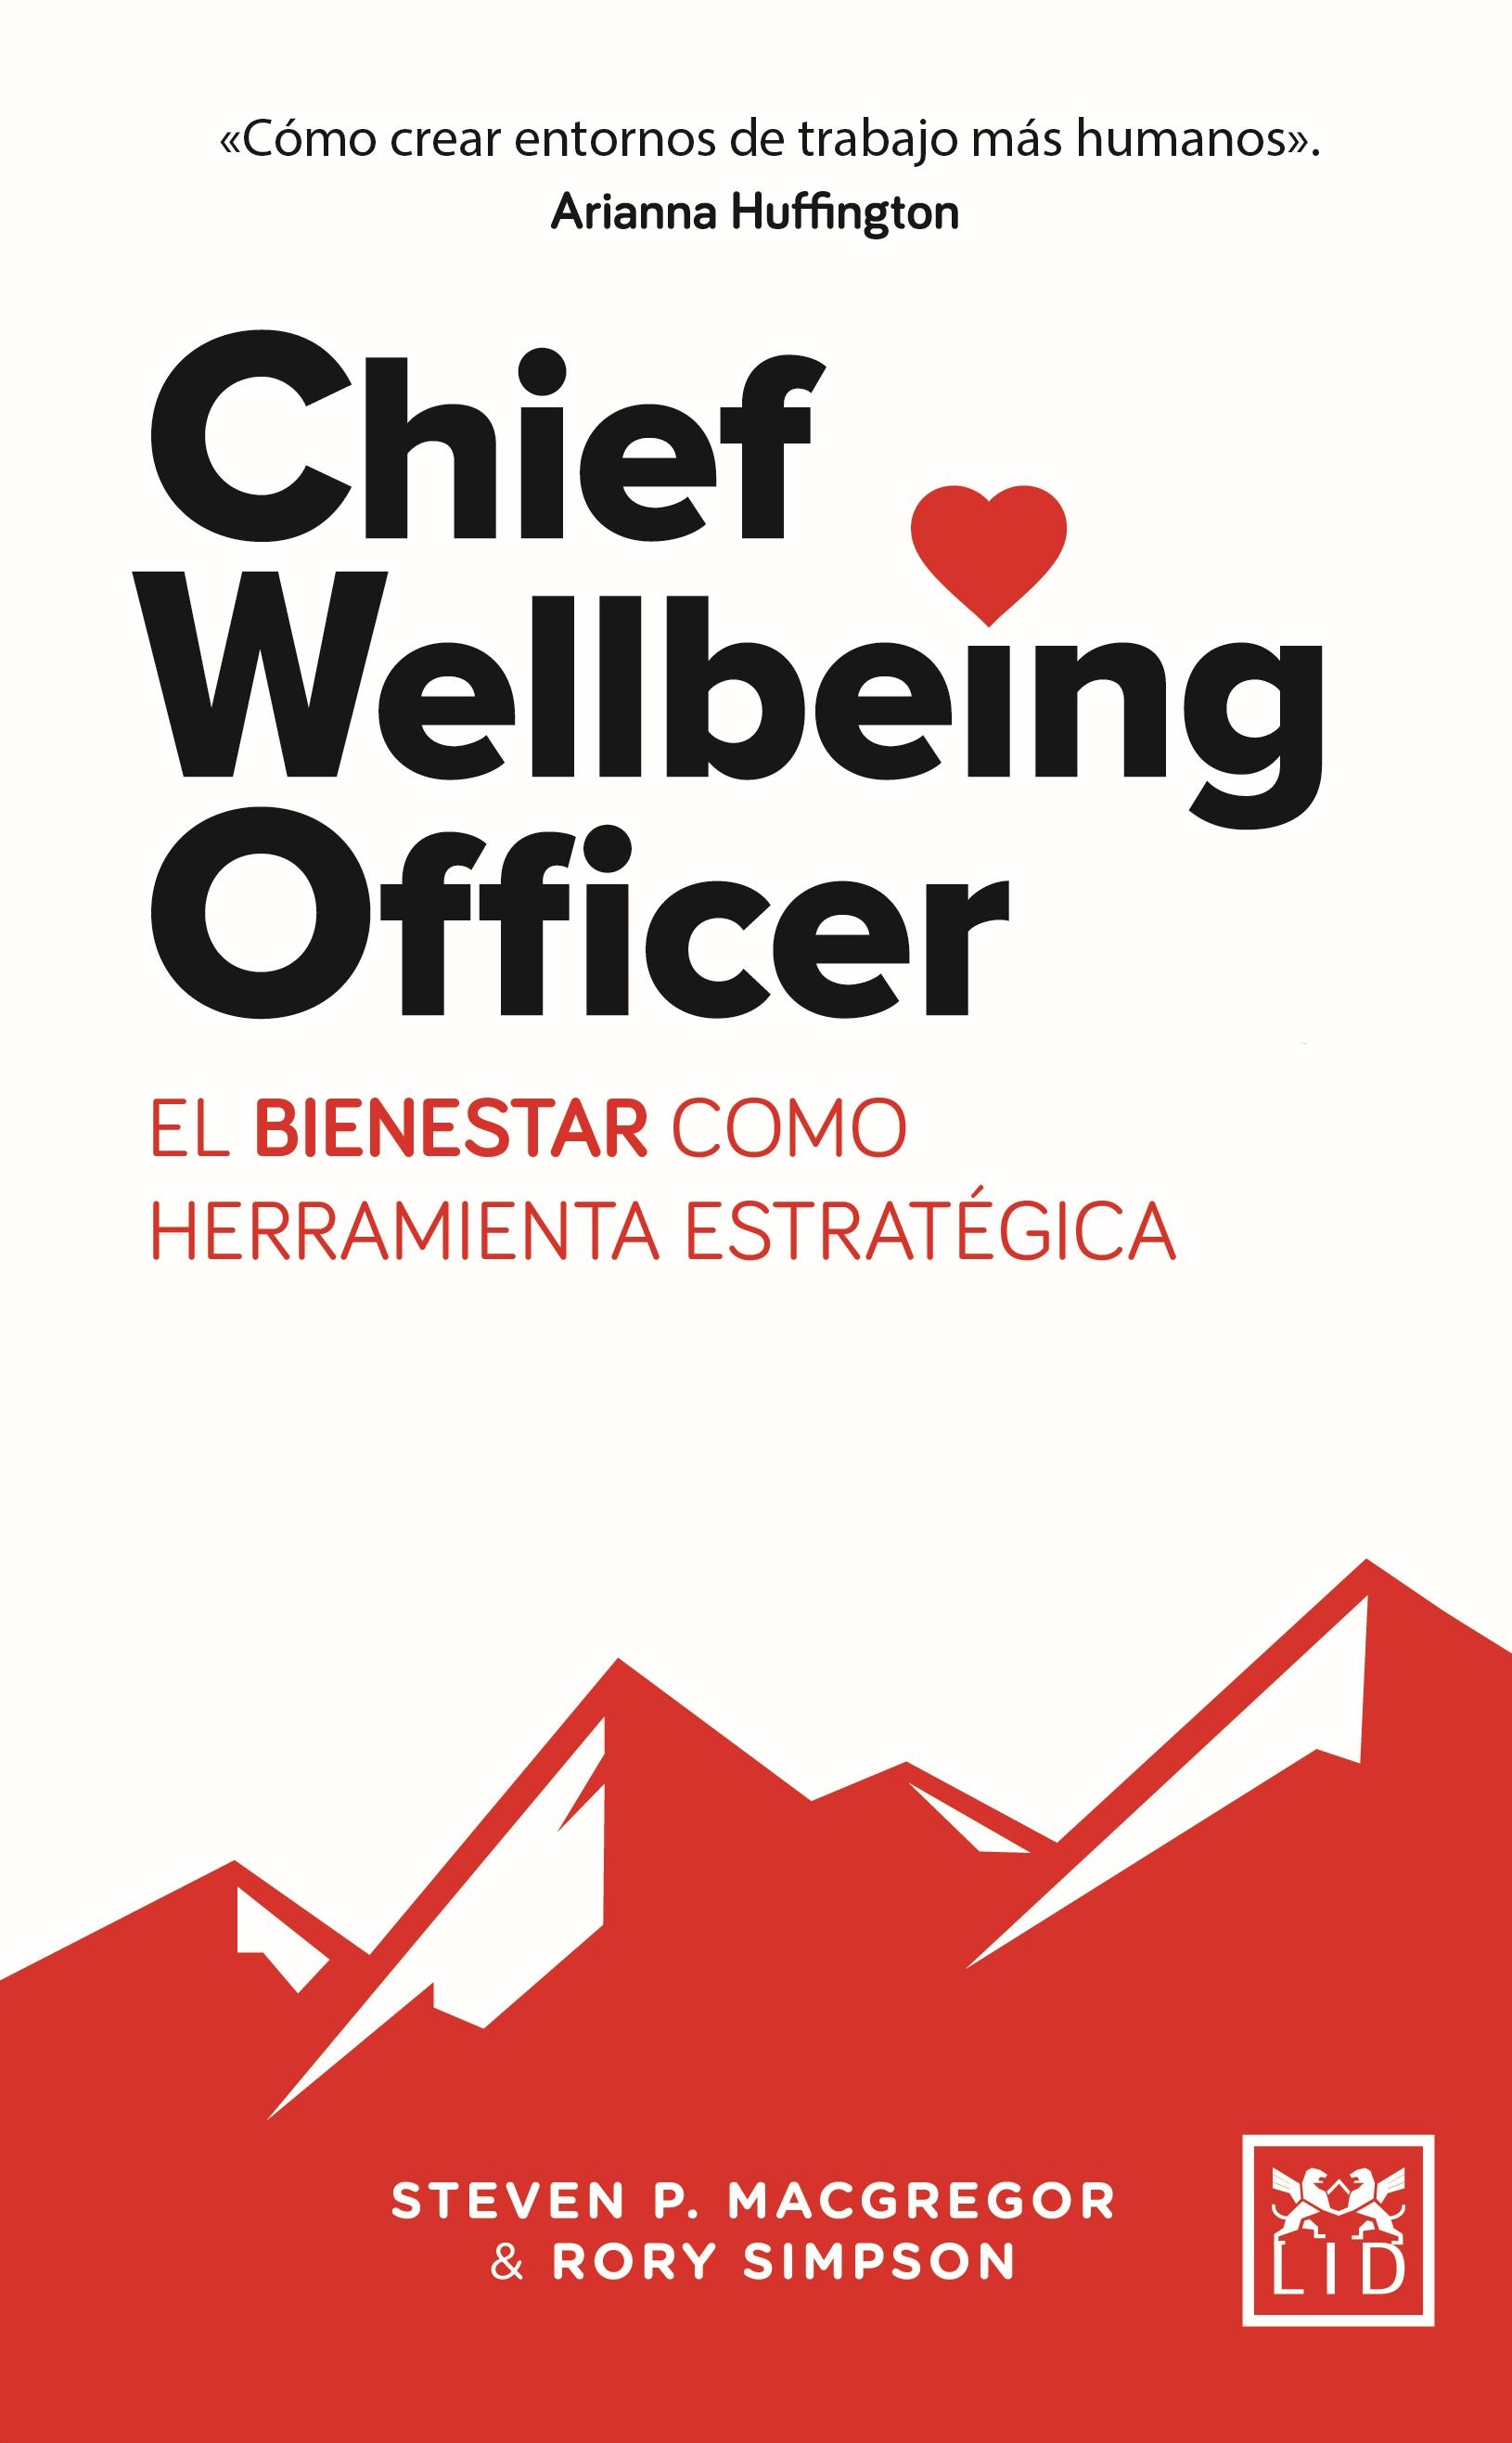 Chief Wellbeing Officer "El bienestar como herramienta estratégica"